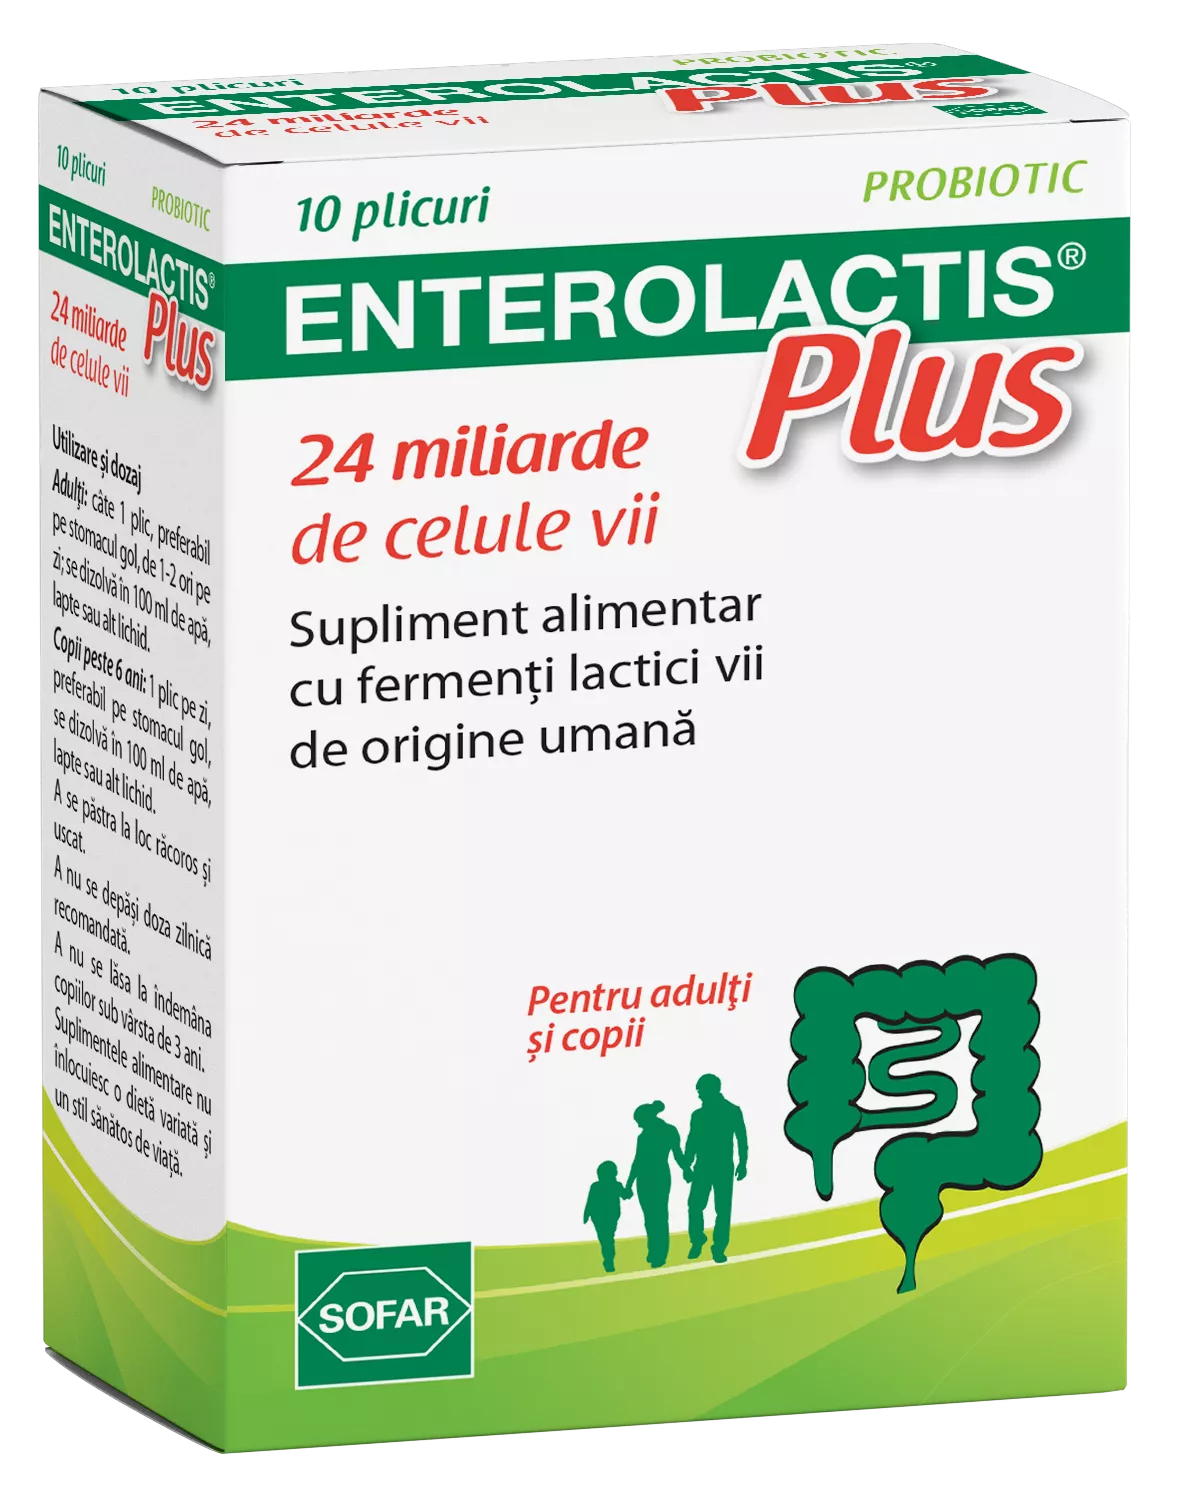 Enterolactis Plus, 10 plicuri, Sofar, [],remediumfarm.ro